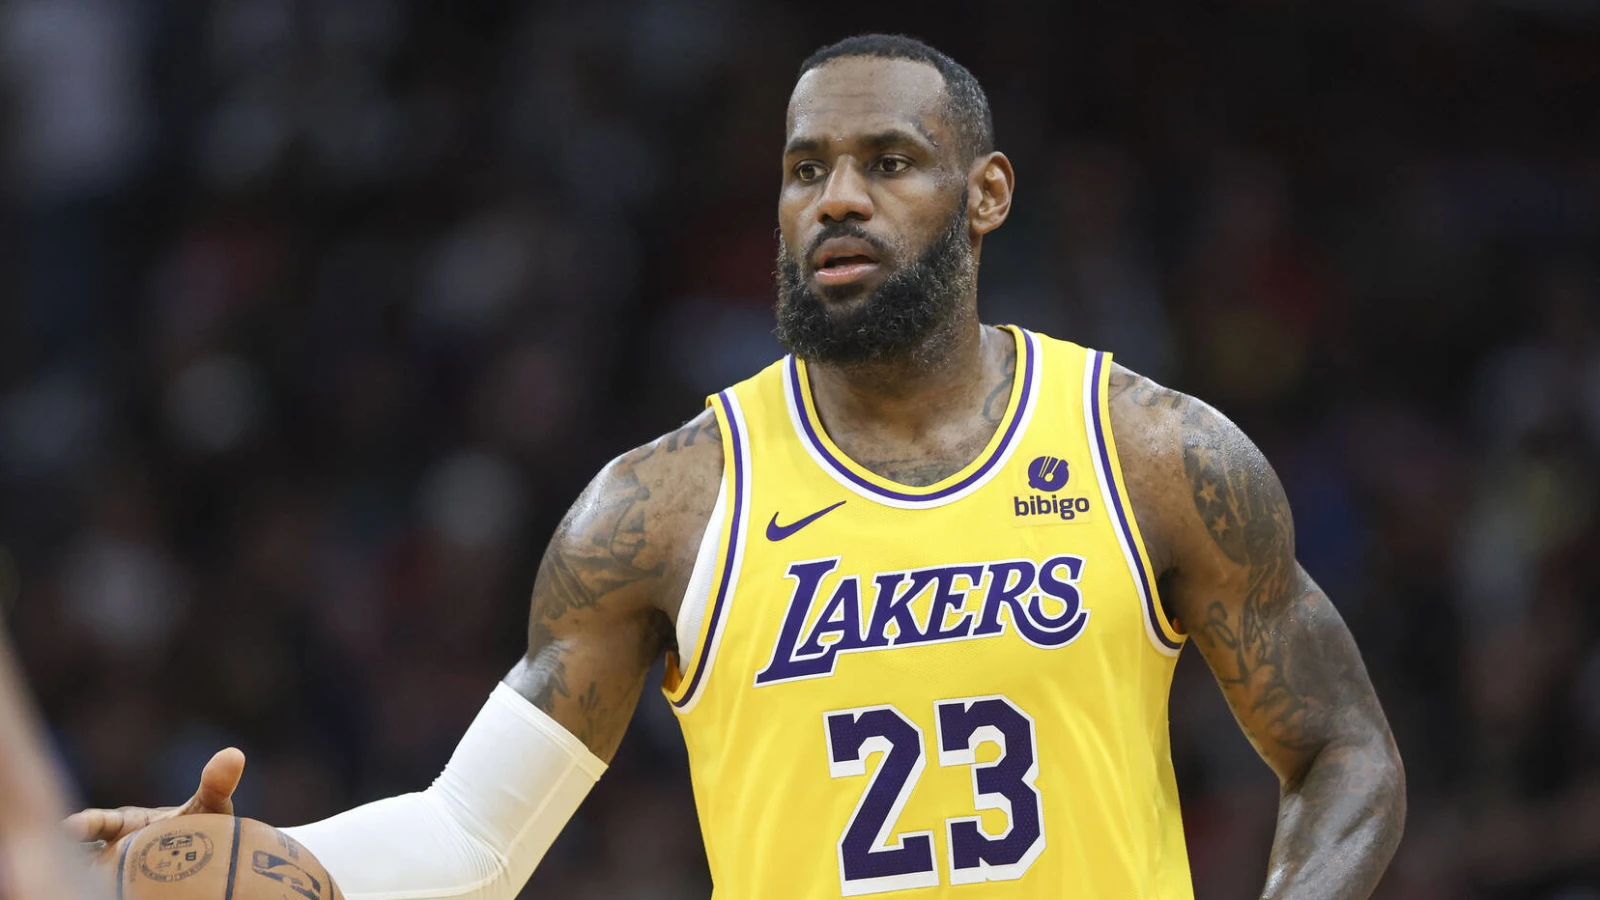 Слухи о обмене в НБА: Леброн Джеймс рассматривает возможность перехода в «Майами Хит», «Филадельфию 76ерс» и «Нью-Йорк Никс»